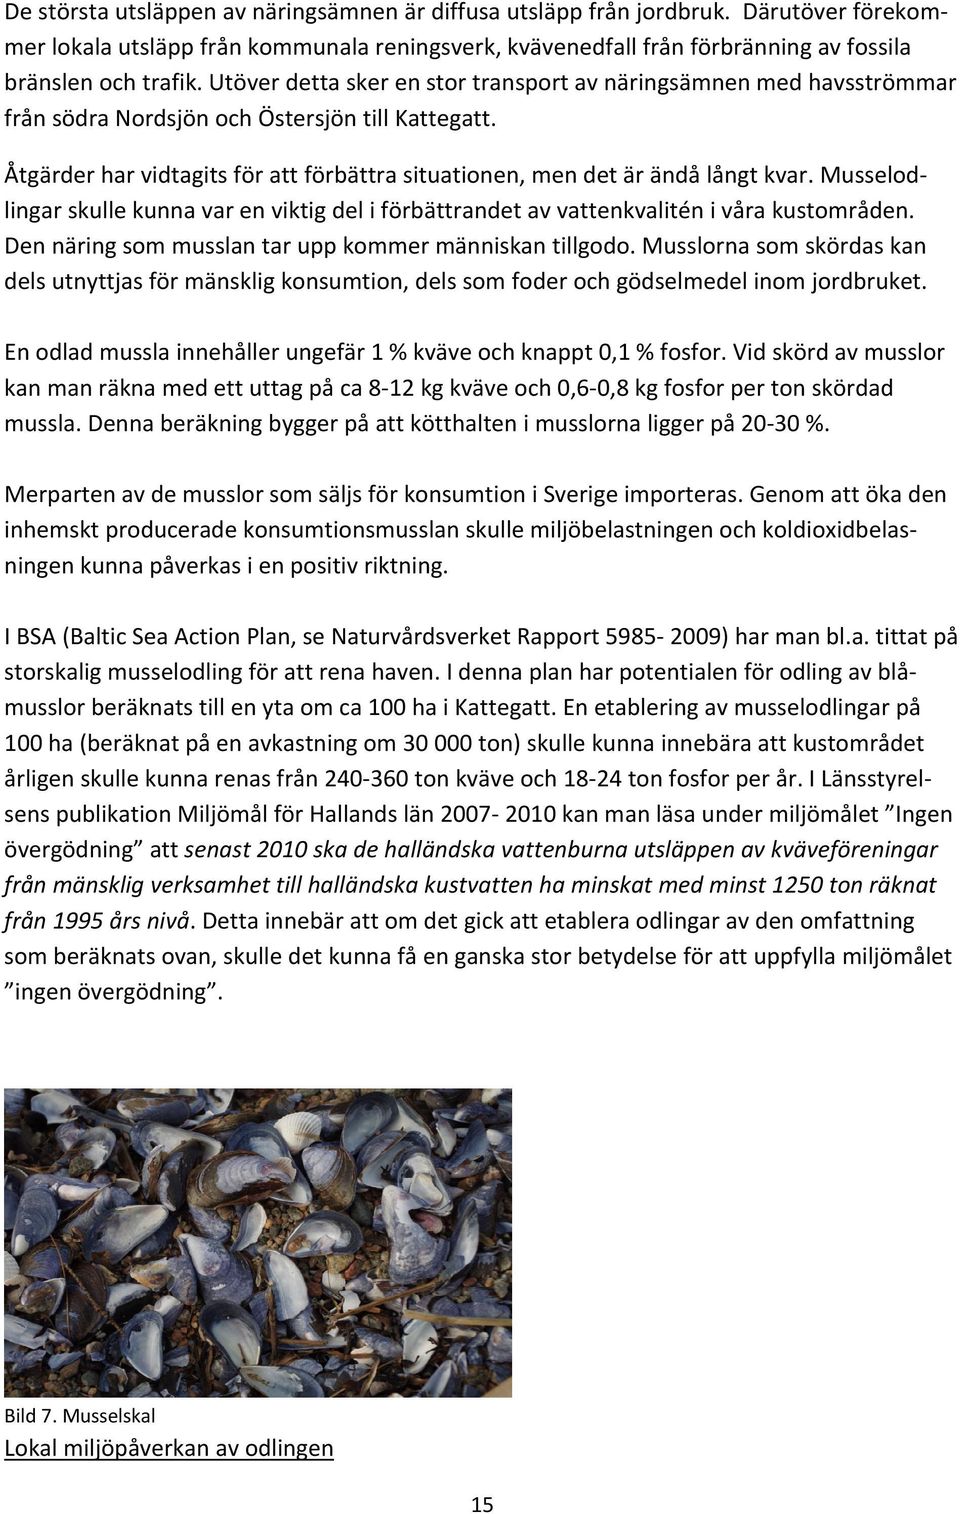 Musselodlingar skulle kunna var en viktig del i förbättrandet av vattenkvalitén i våra kustområden. Den näring som musslan tar upp kommer människan tillgodo.